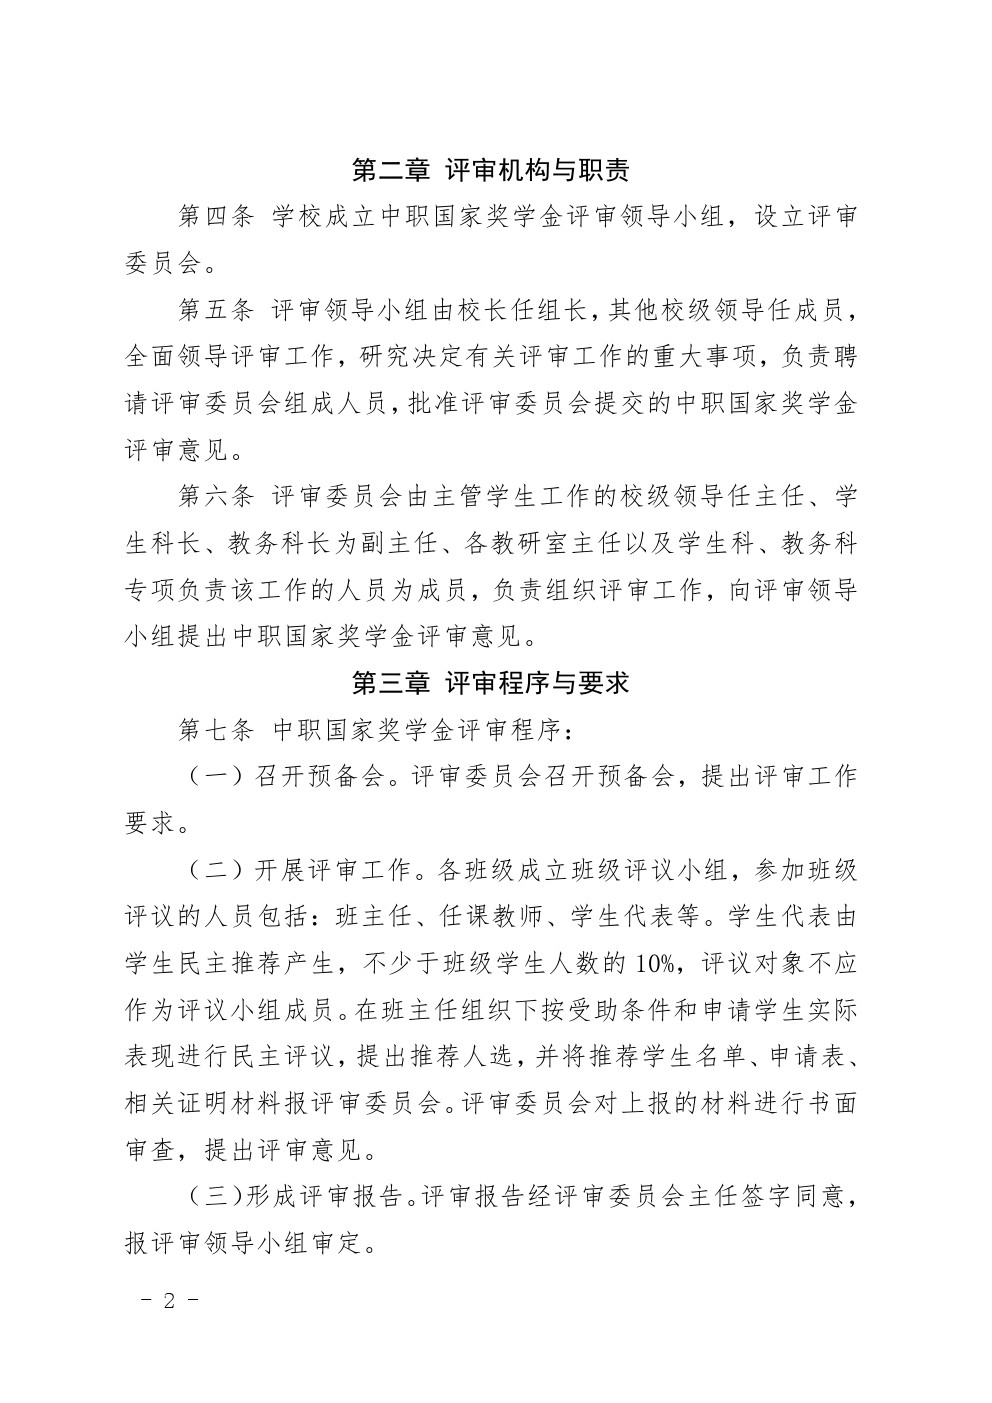 四川省南充卫生学校中等职业教育国家奖学金评审暂行办法